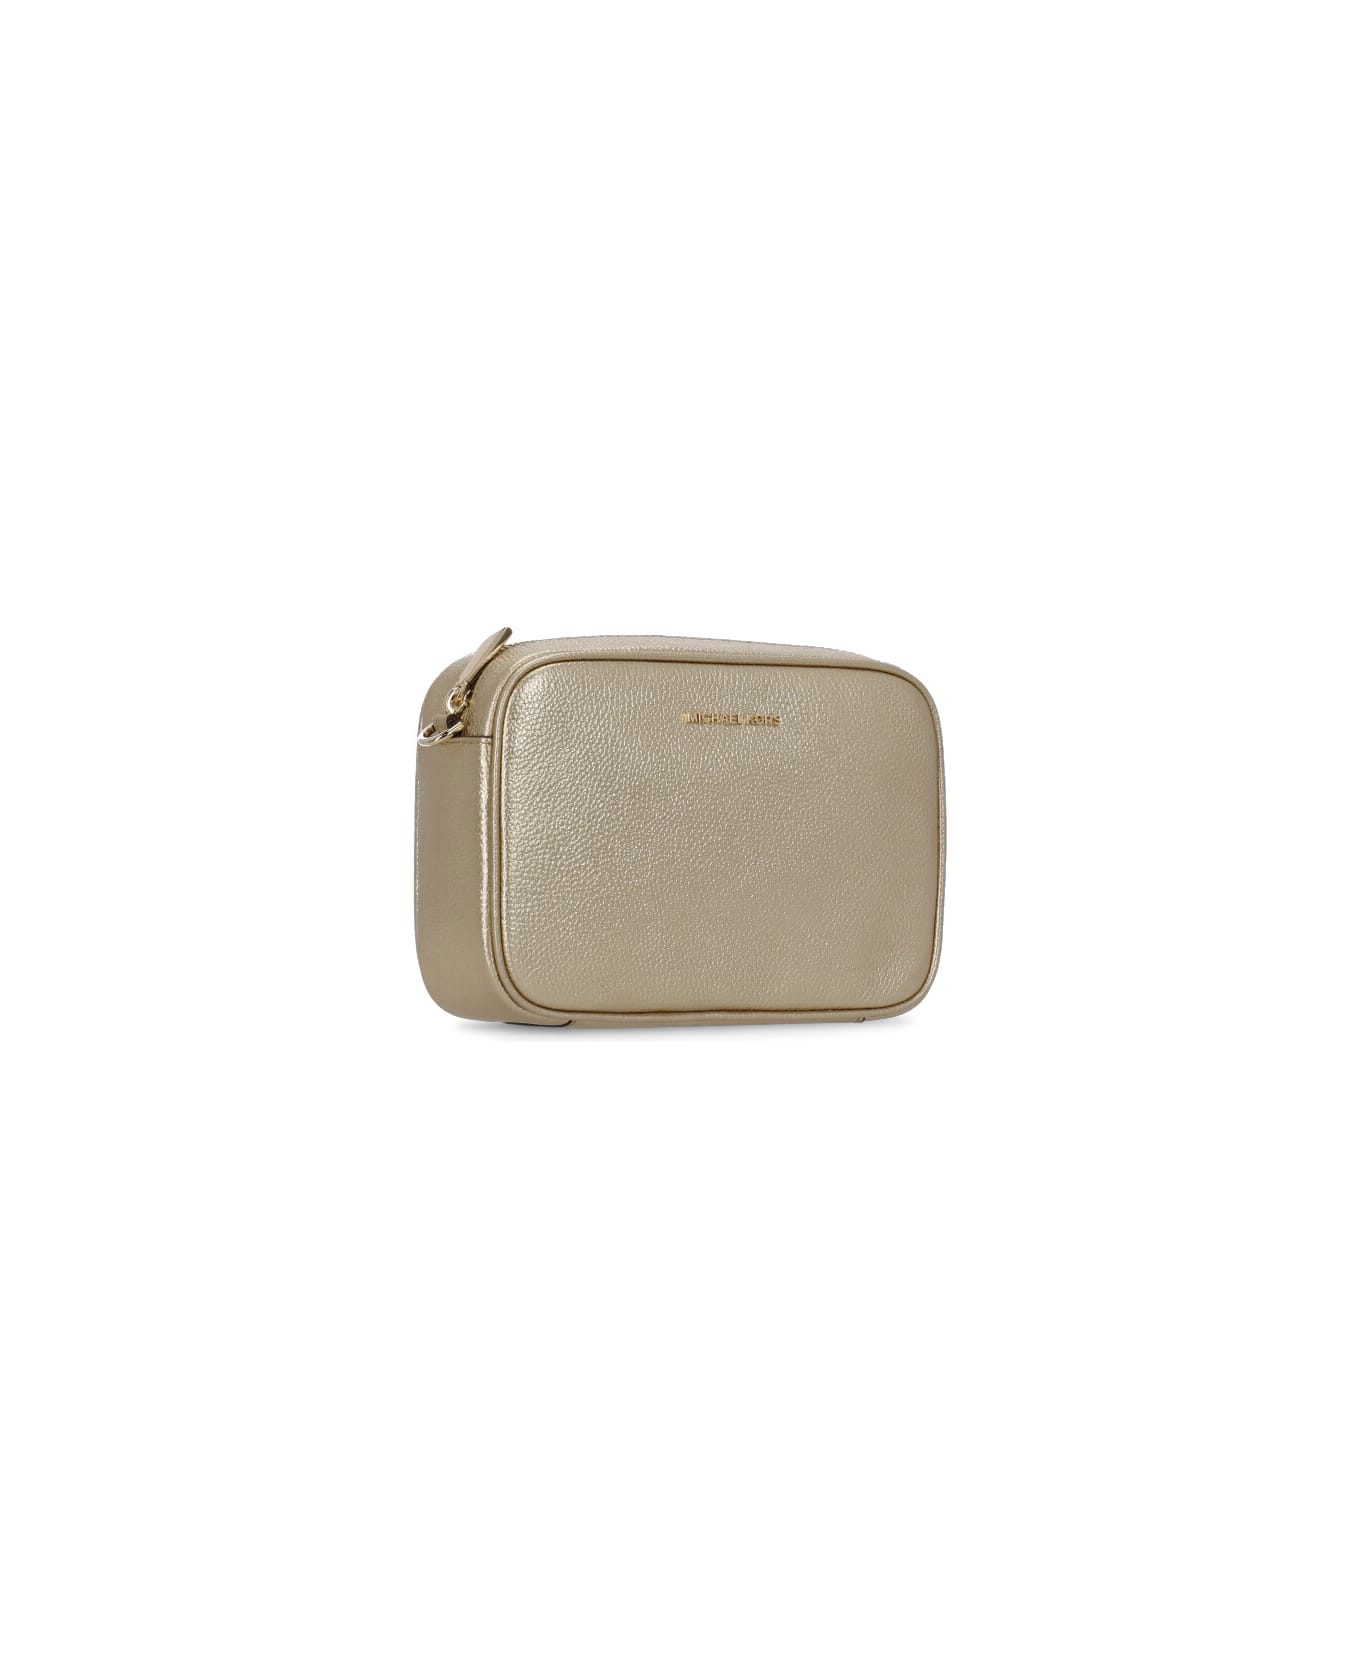 Michael Kors Leather Shoulder Bag - Gold